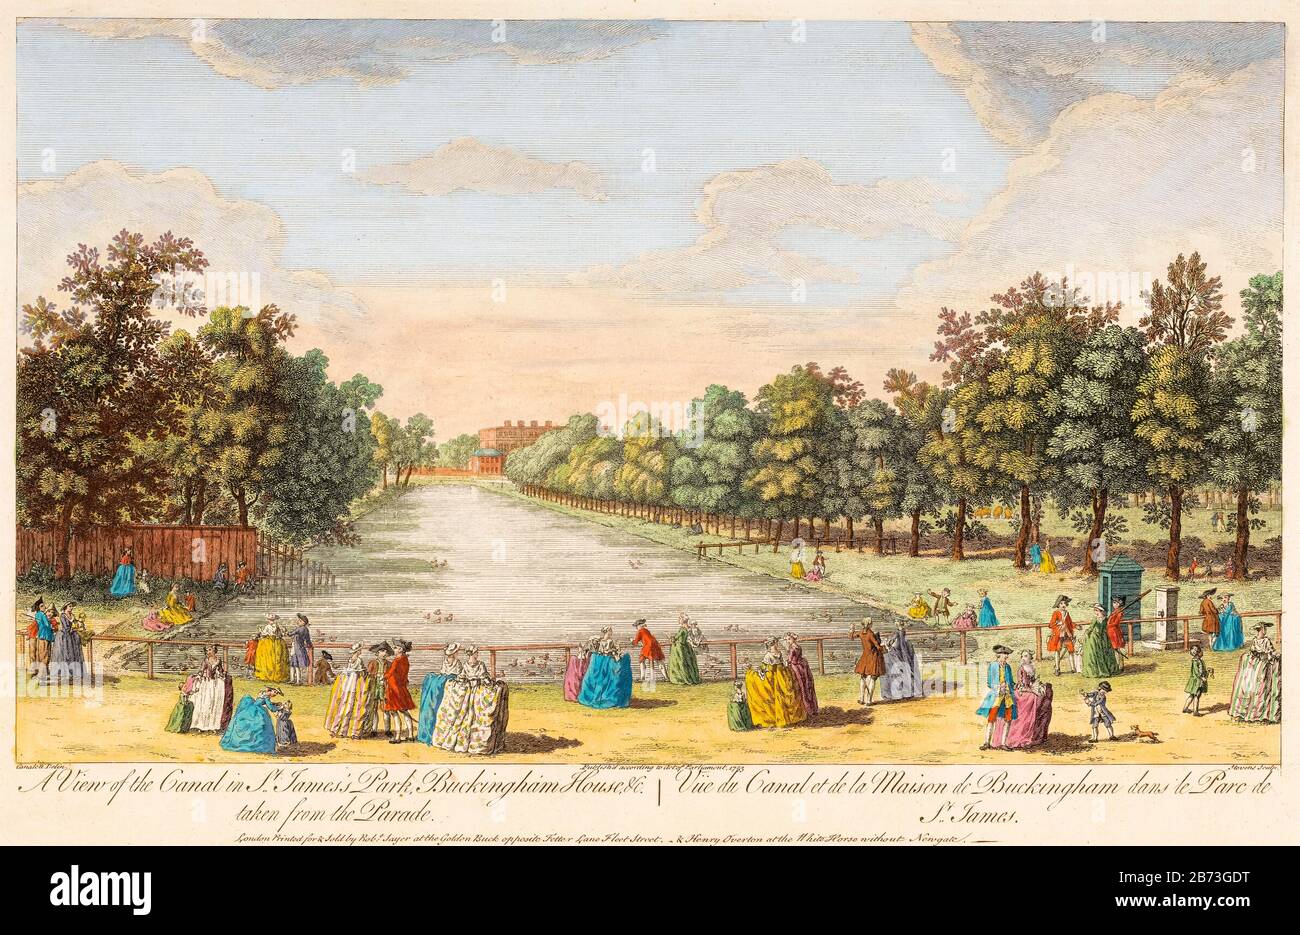 Blick auf den Kanal im St James's Park und Buckingham Palace, London, von Horse Guard's Parade, Abbildung aus dem 18. Jahrhundert von Robert Sayer, nach Canaletto, 1753 Stockfoto